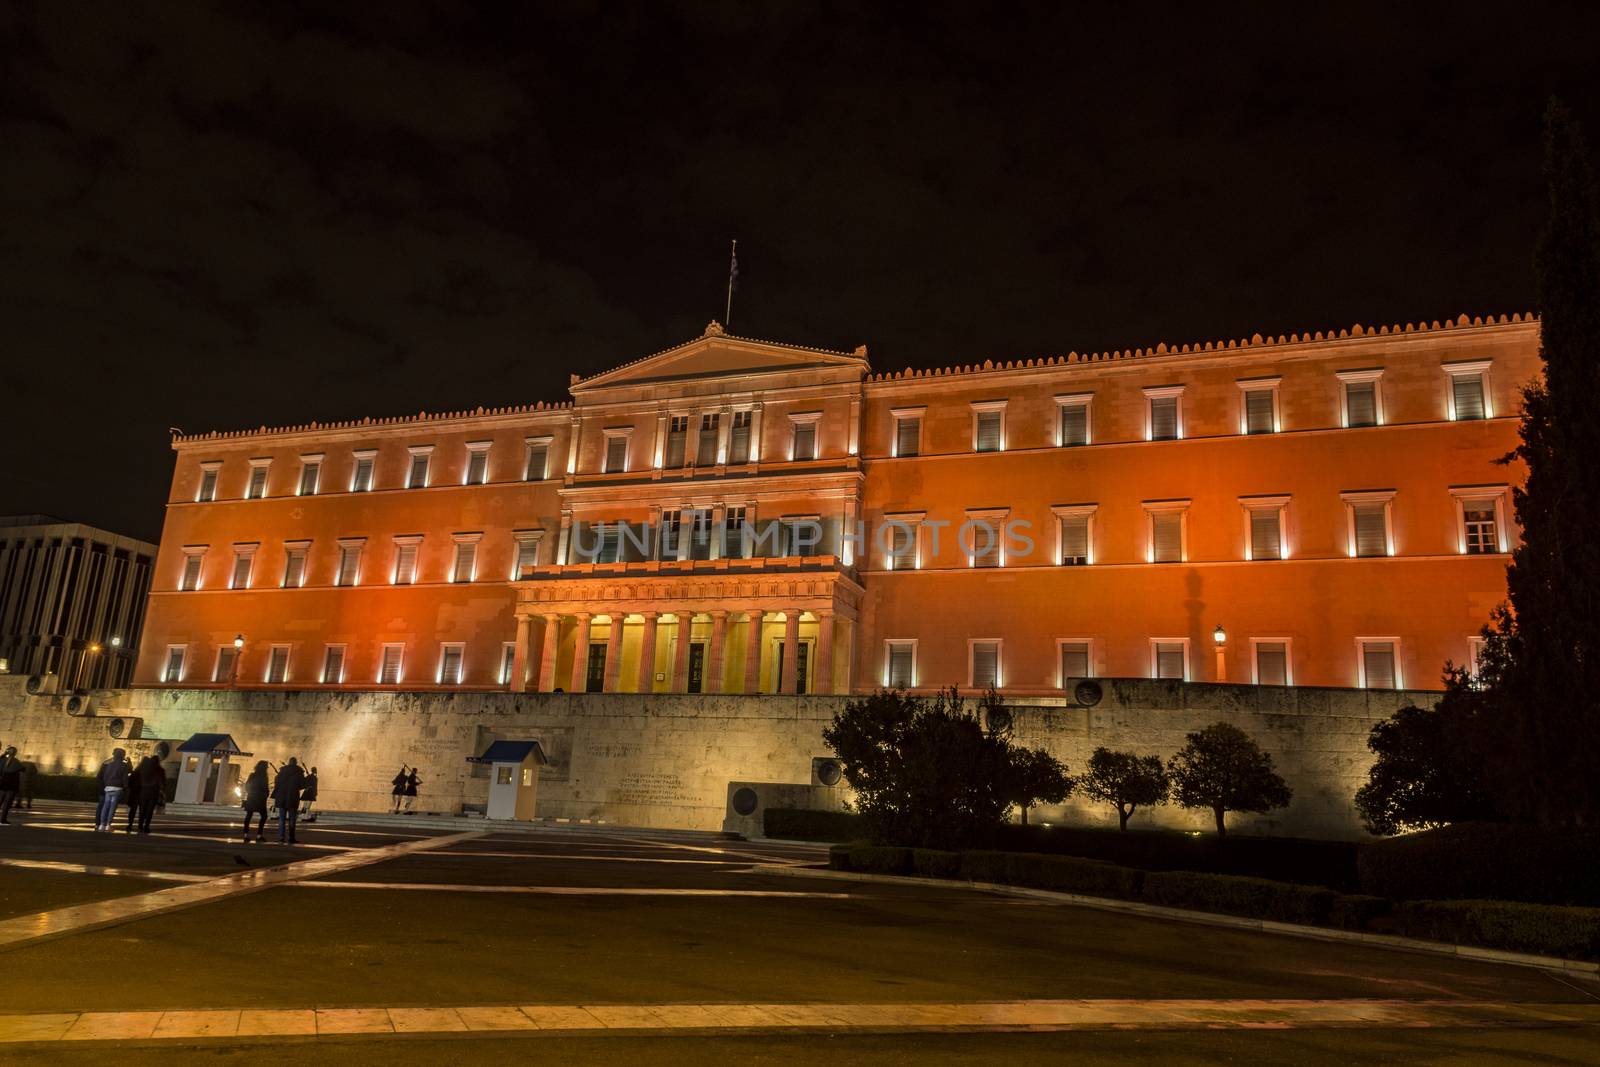 orange parliament of greece by vangelis